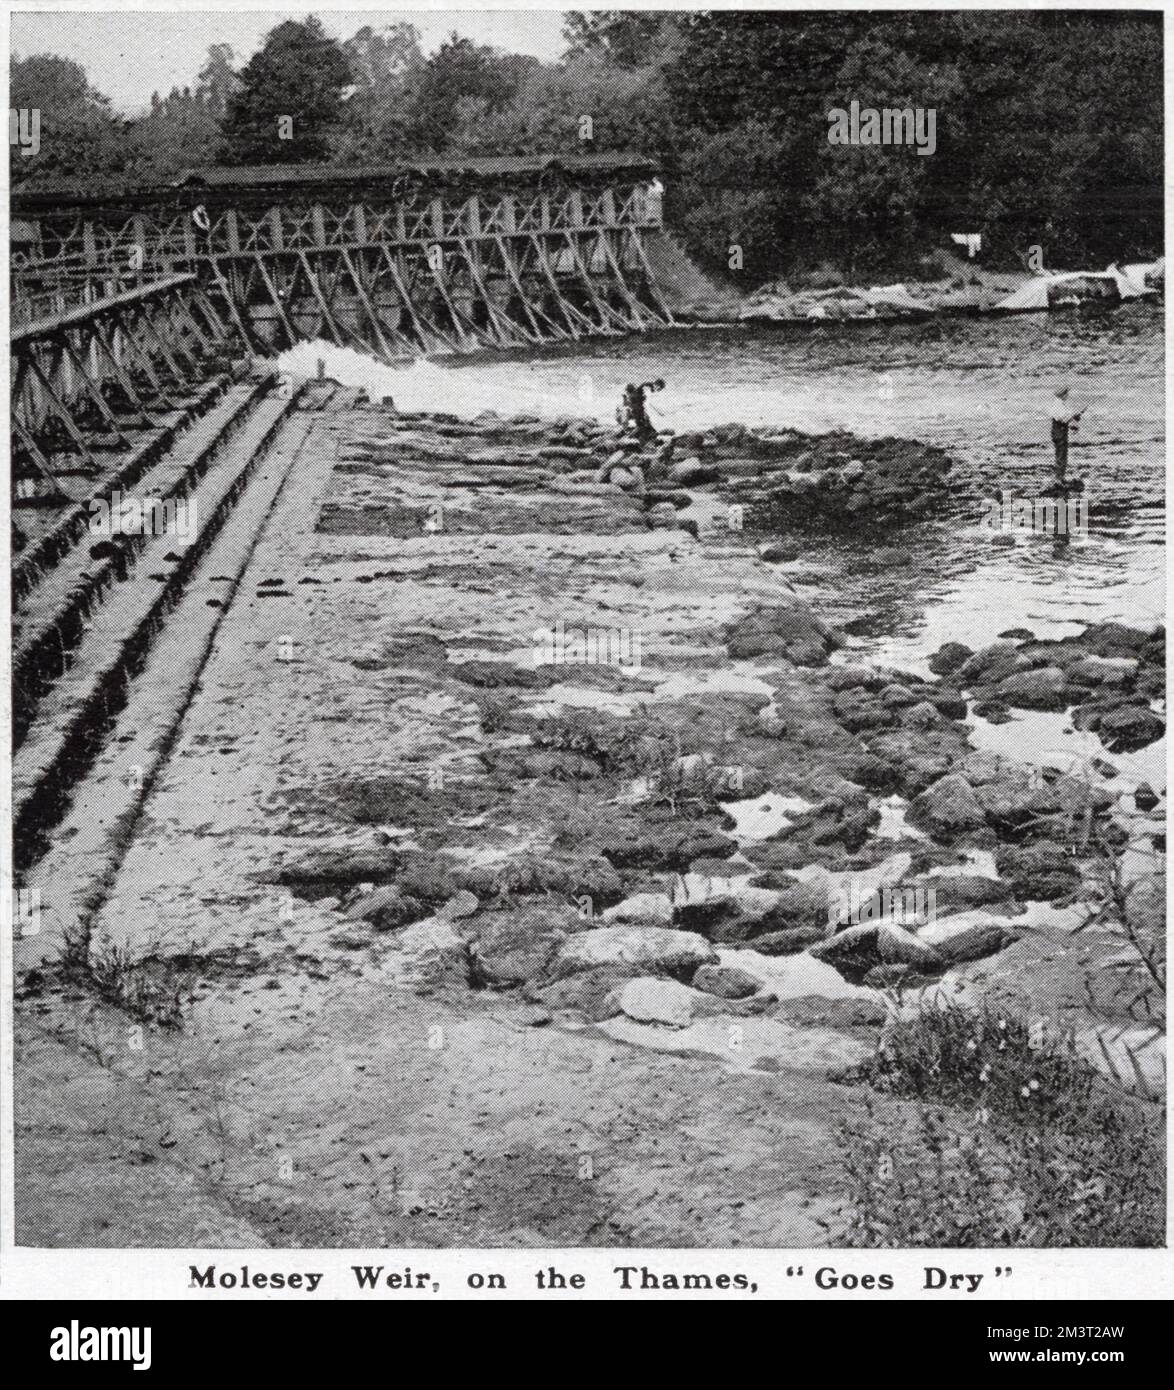 Molesey Weir, di solito noto per la sua corrente d'acqua, si è dimostrato completamente asciutto durante un periodo di prolungata siccità nel 1921. Foto Stock